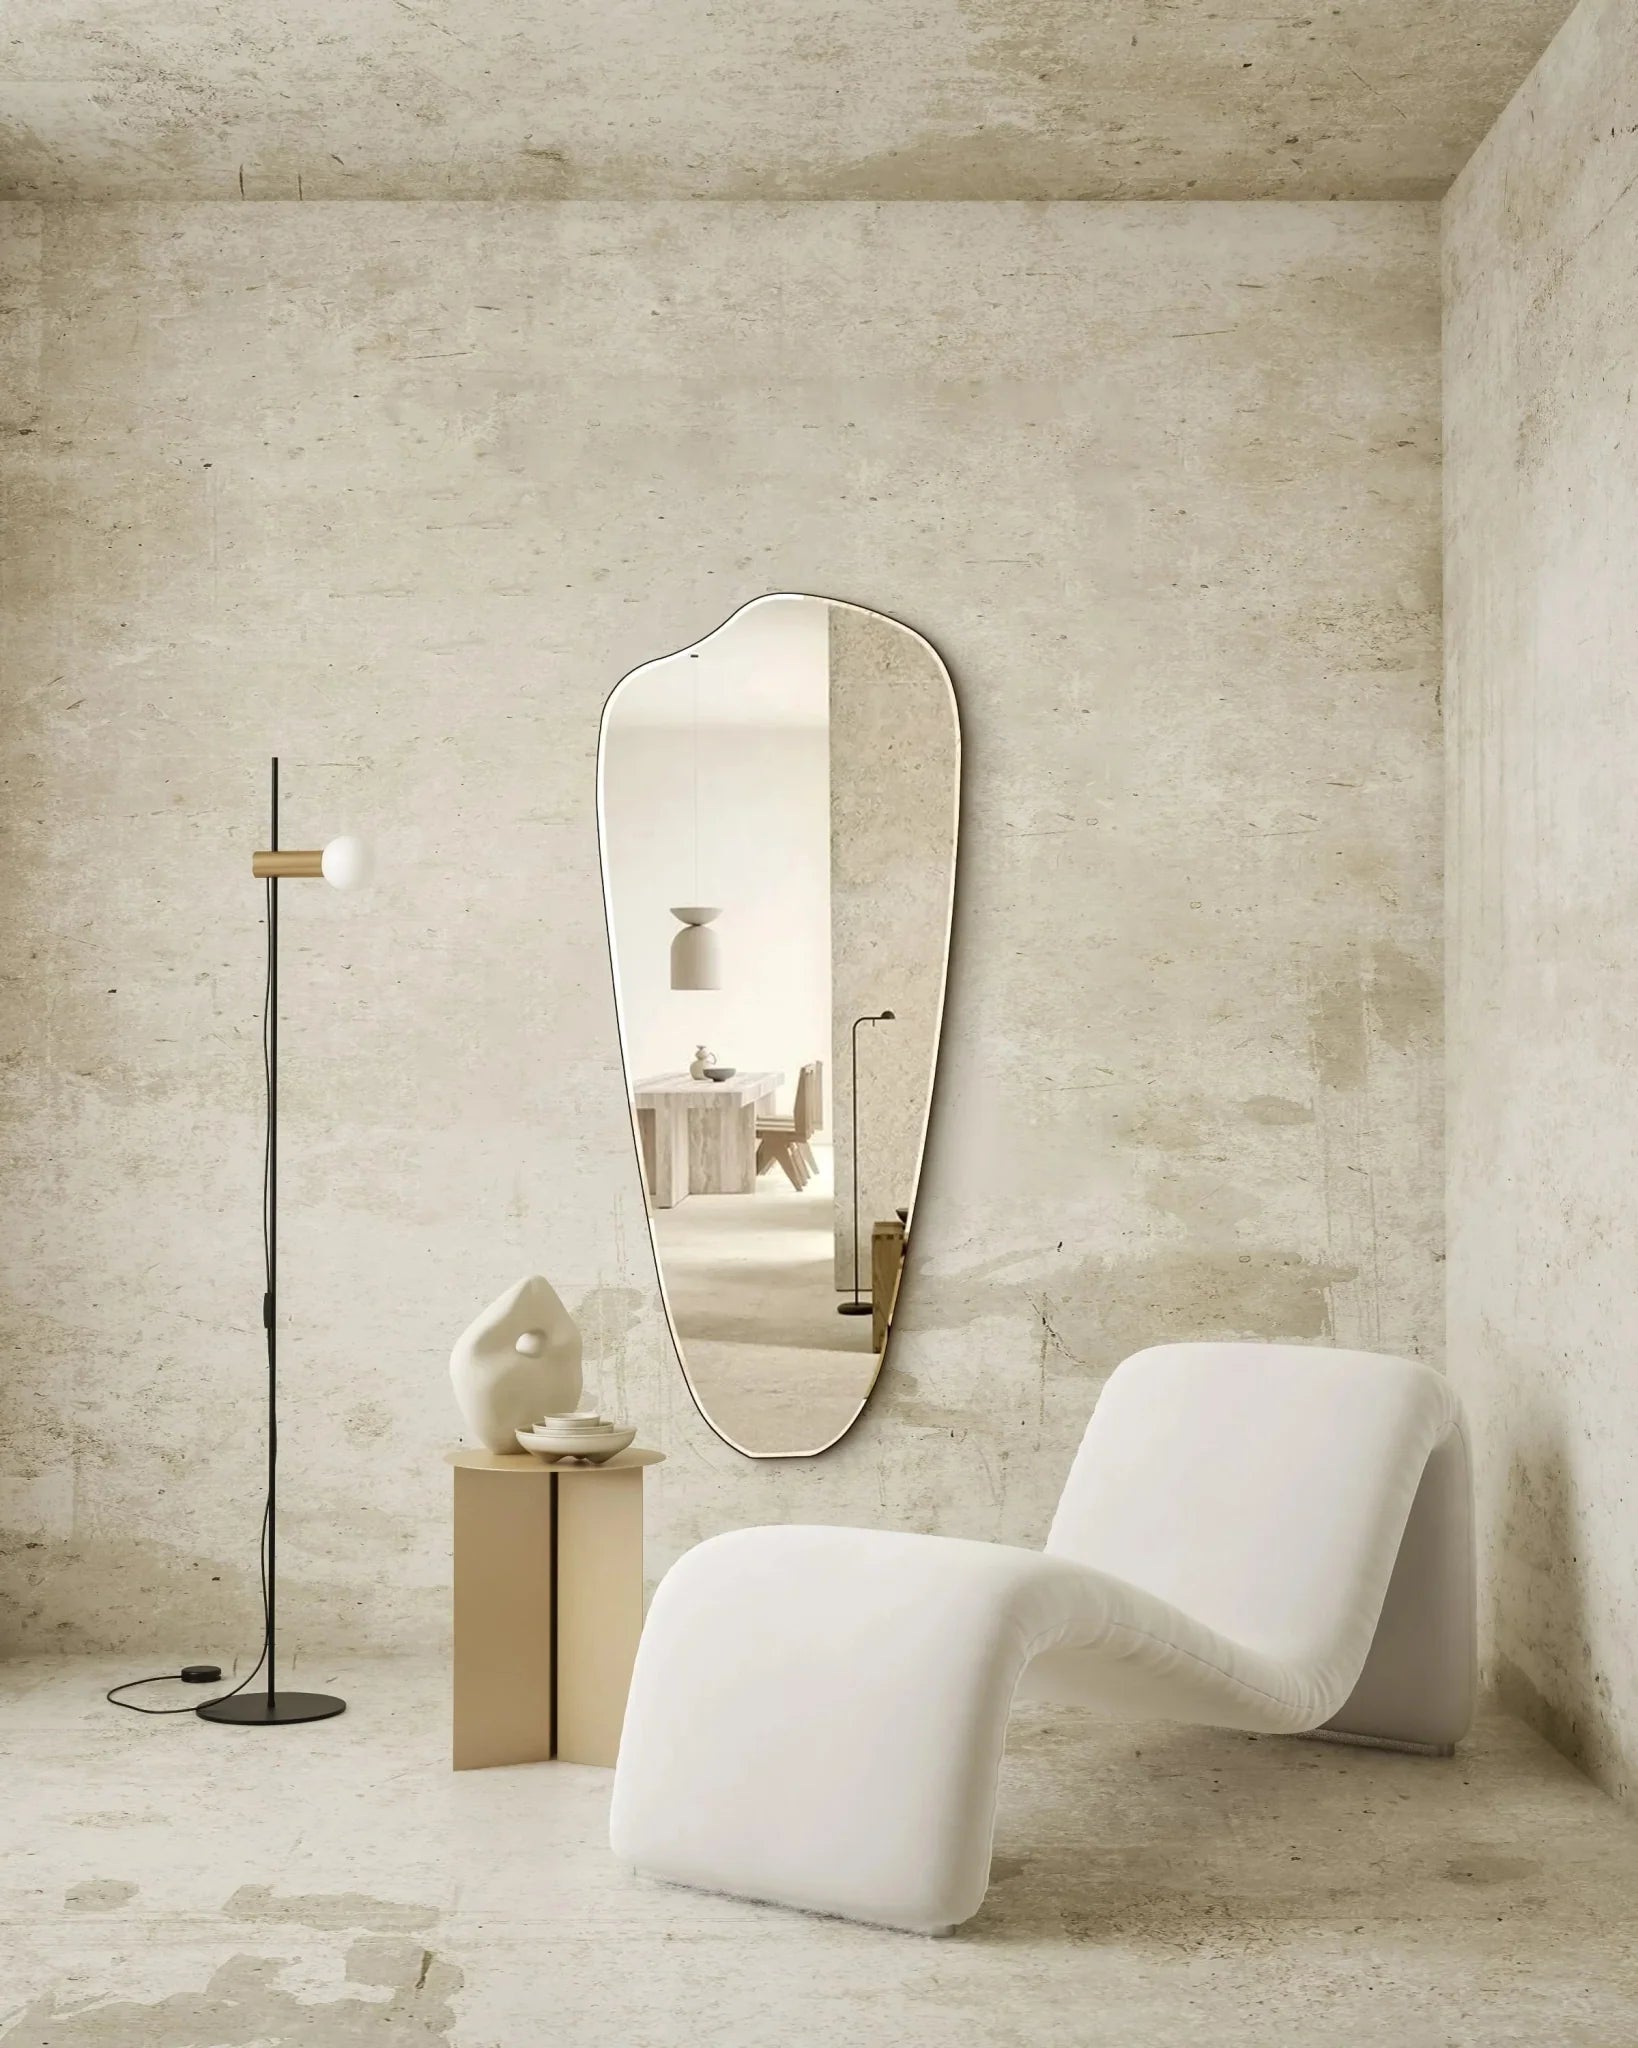 Virgil mirror » Modern mirror in curved design, 140x60cm